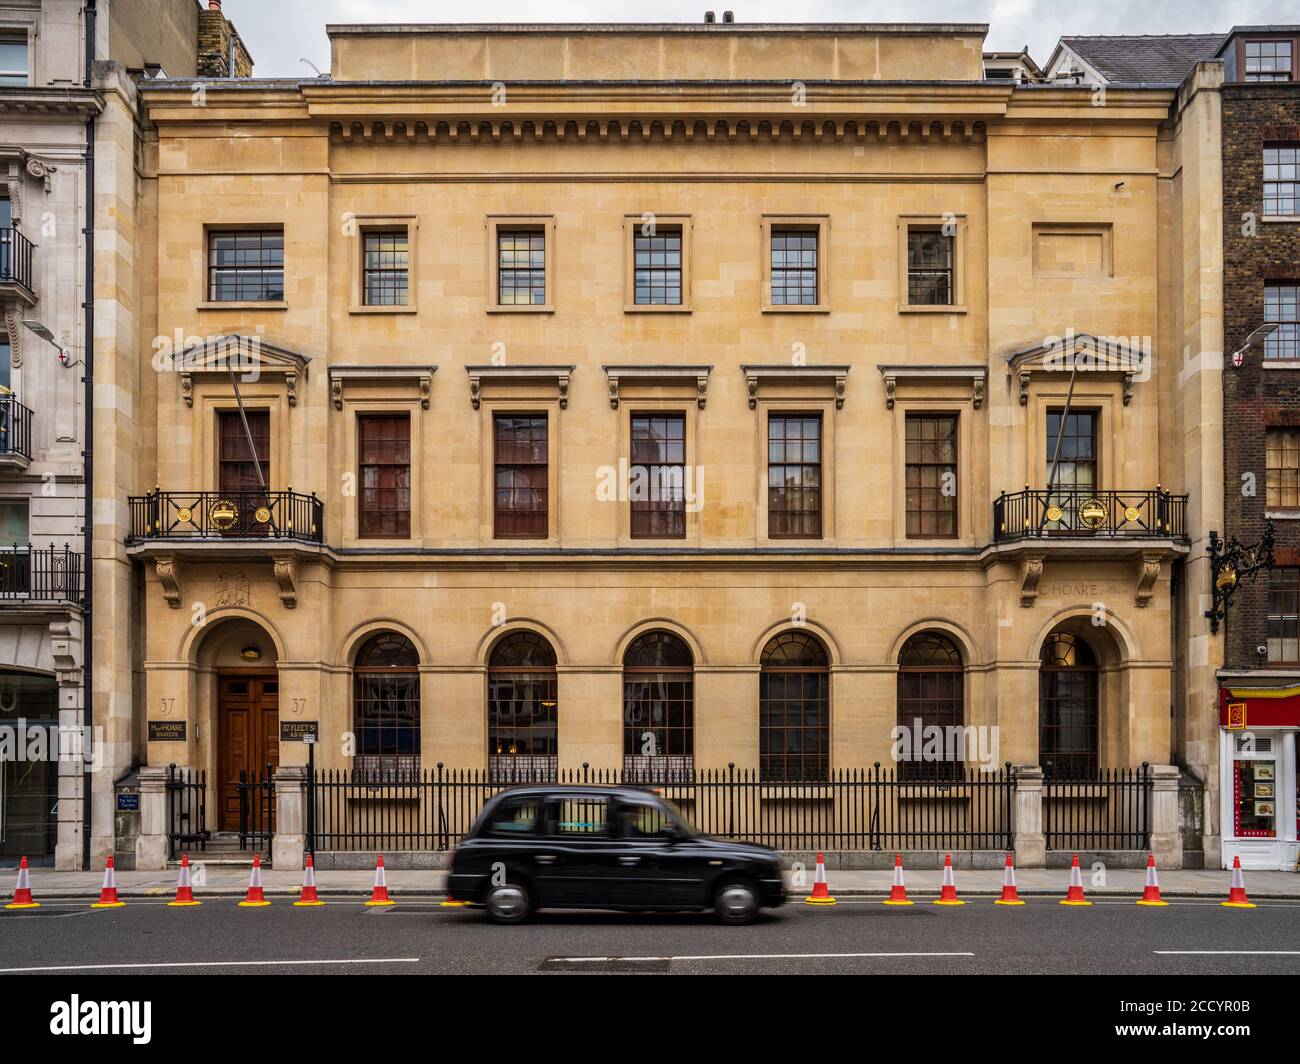 C. Hoare & Co Private Bank Fleet Street Londra. Fondata nel 1672 da Sir Richard Hoare, C. Hoare & Co è ancora di proprietà della stessa famiglia. Foto Stock